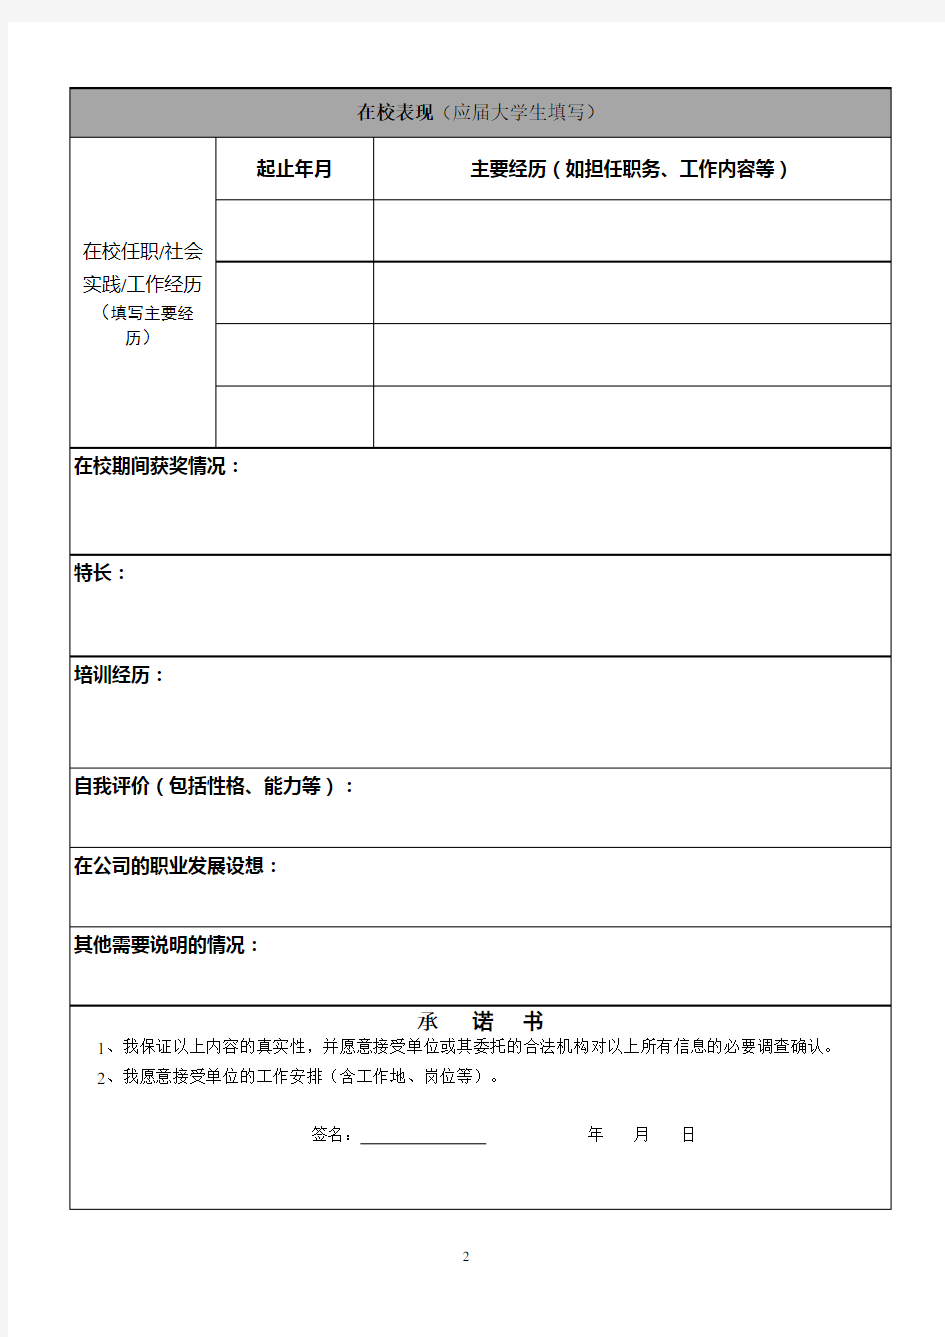 员工信息登记表(空表,下载填写试用)